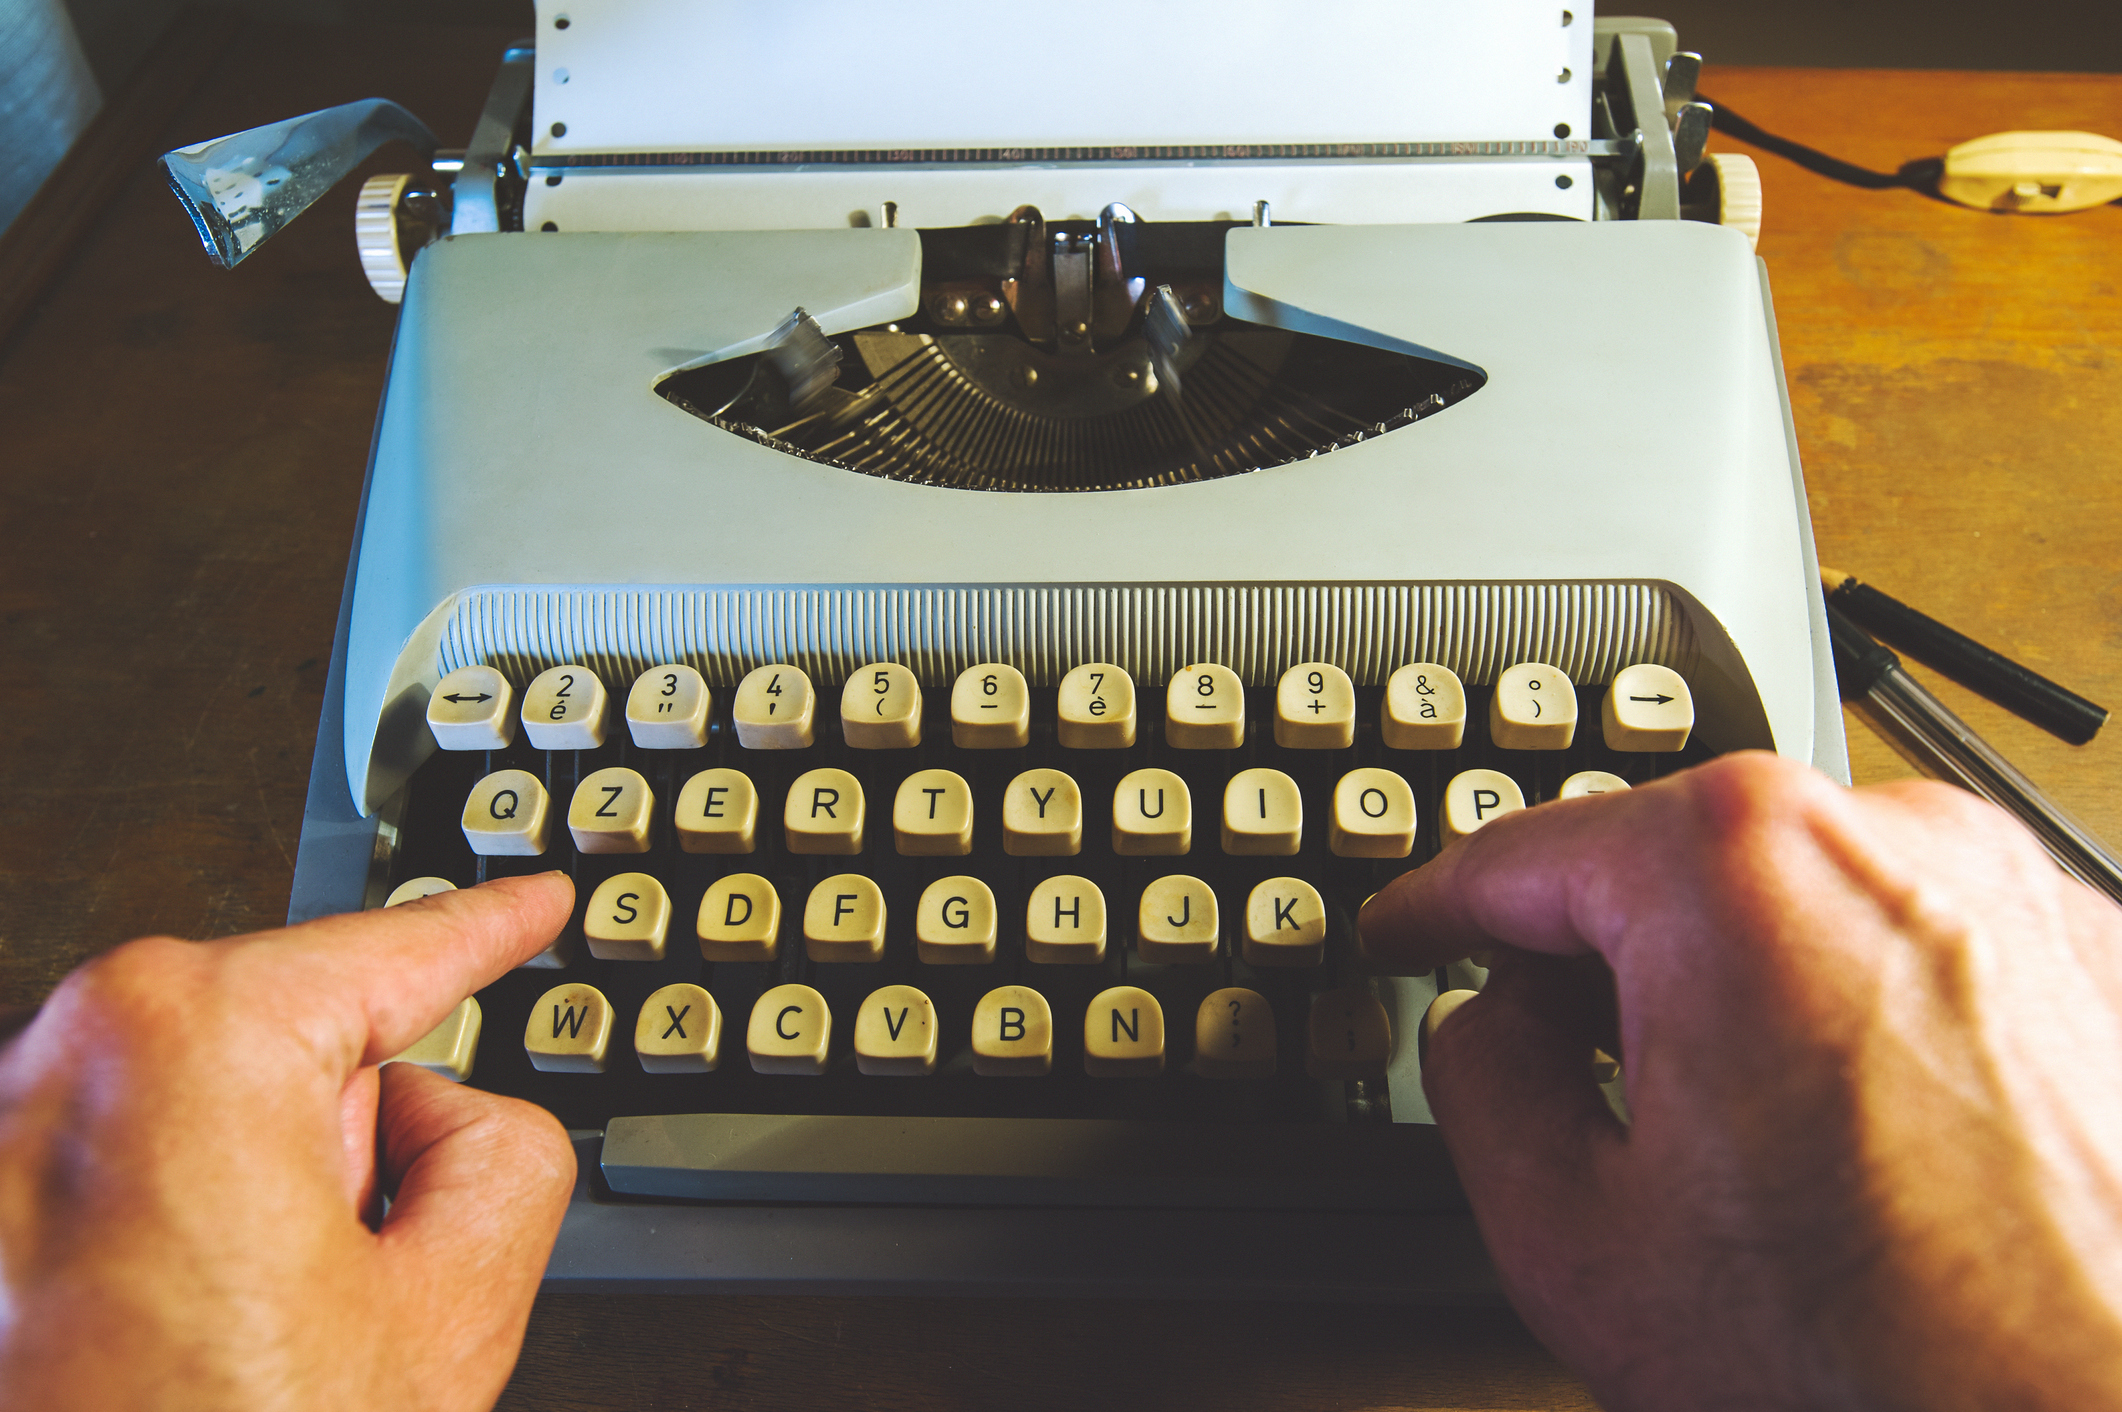 <p>Пишещата машина. Това е може би най-романтичното изобретение: италианецът Пелегрино Тури конструира пишеща машина за своята възлюбена - сляпа графиня. Понеже двамата често били разделени, той искал да даде възможност на любимата си често да му пише писма. По-малко романтичен е краят на пишещата машина: през 1976 се появява персоналният компютър. Оттогава насам тя се използва все по-рядко.</p>